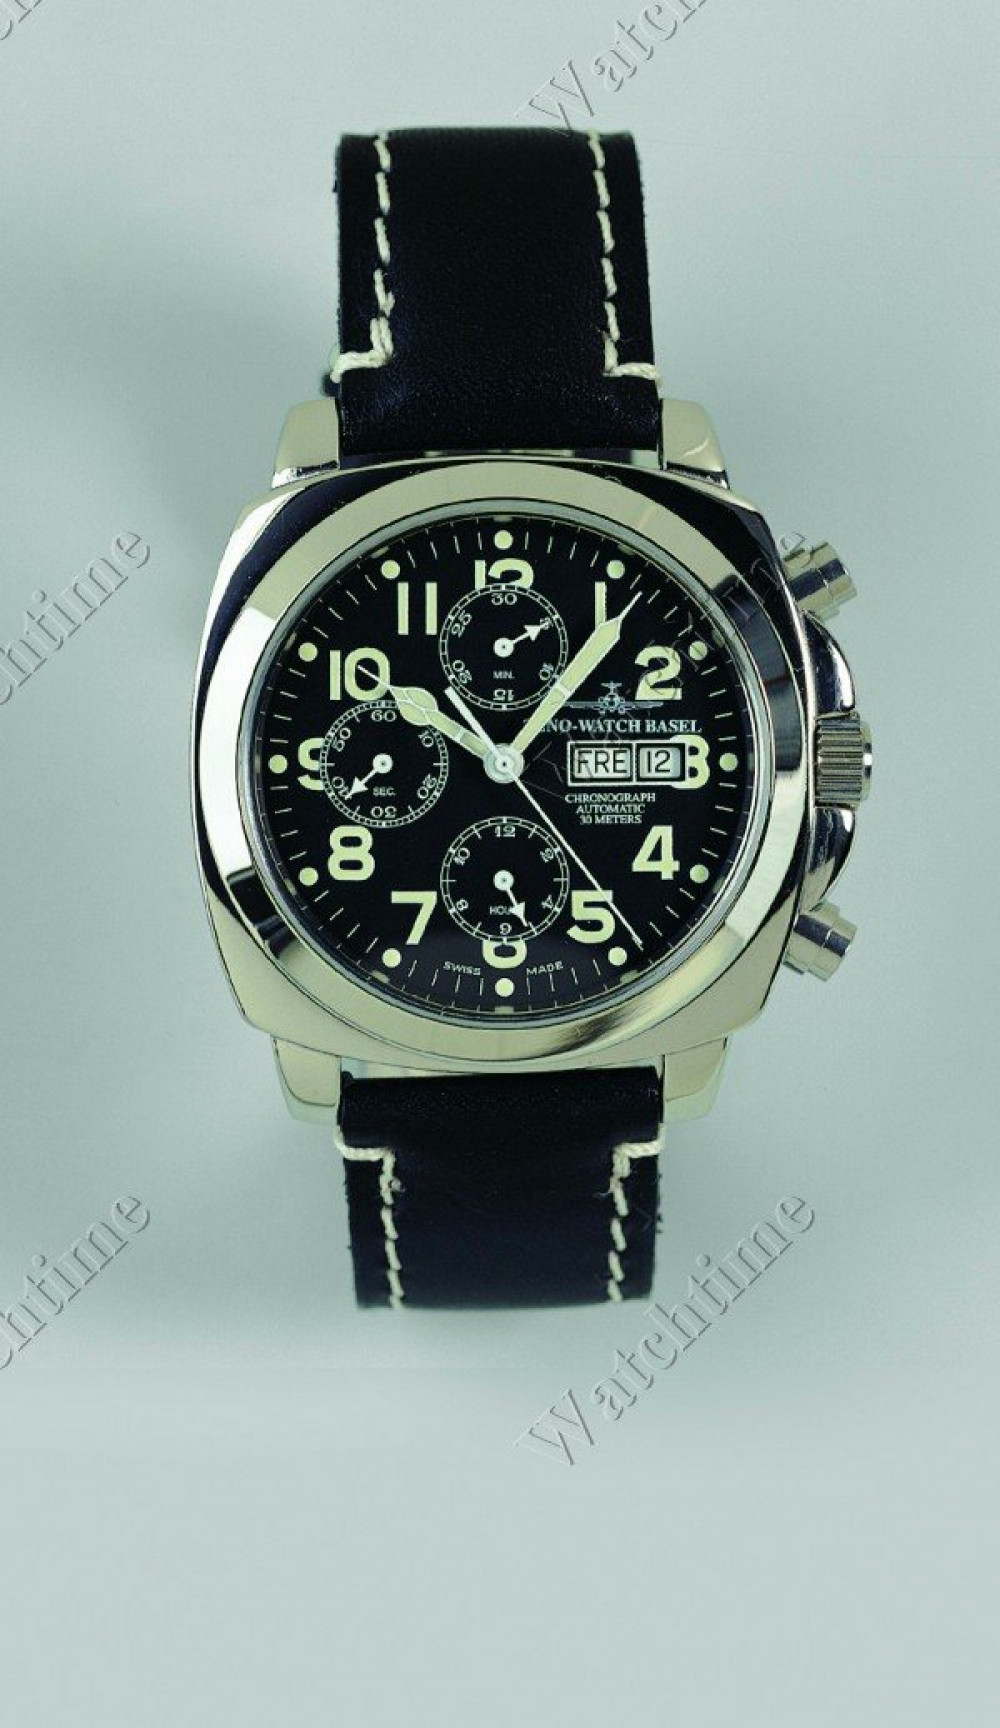 Zegarek firmy Zeno, model Chrono Quaru